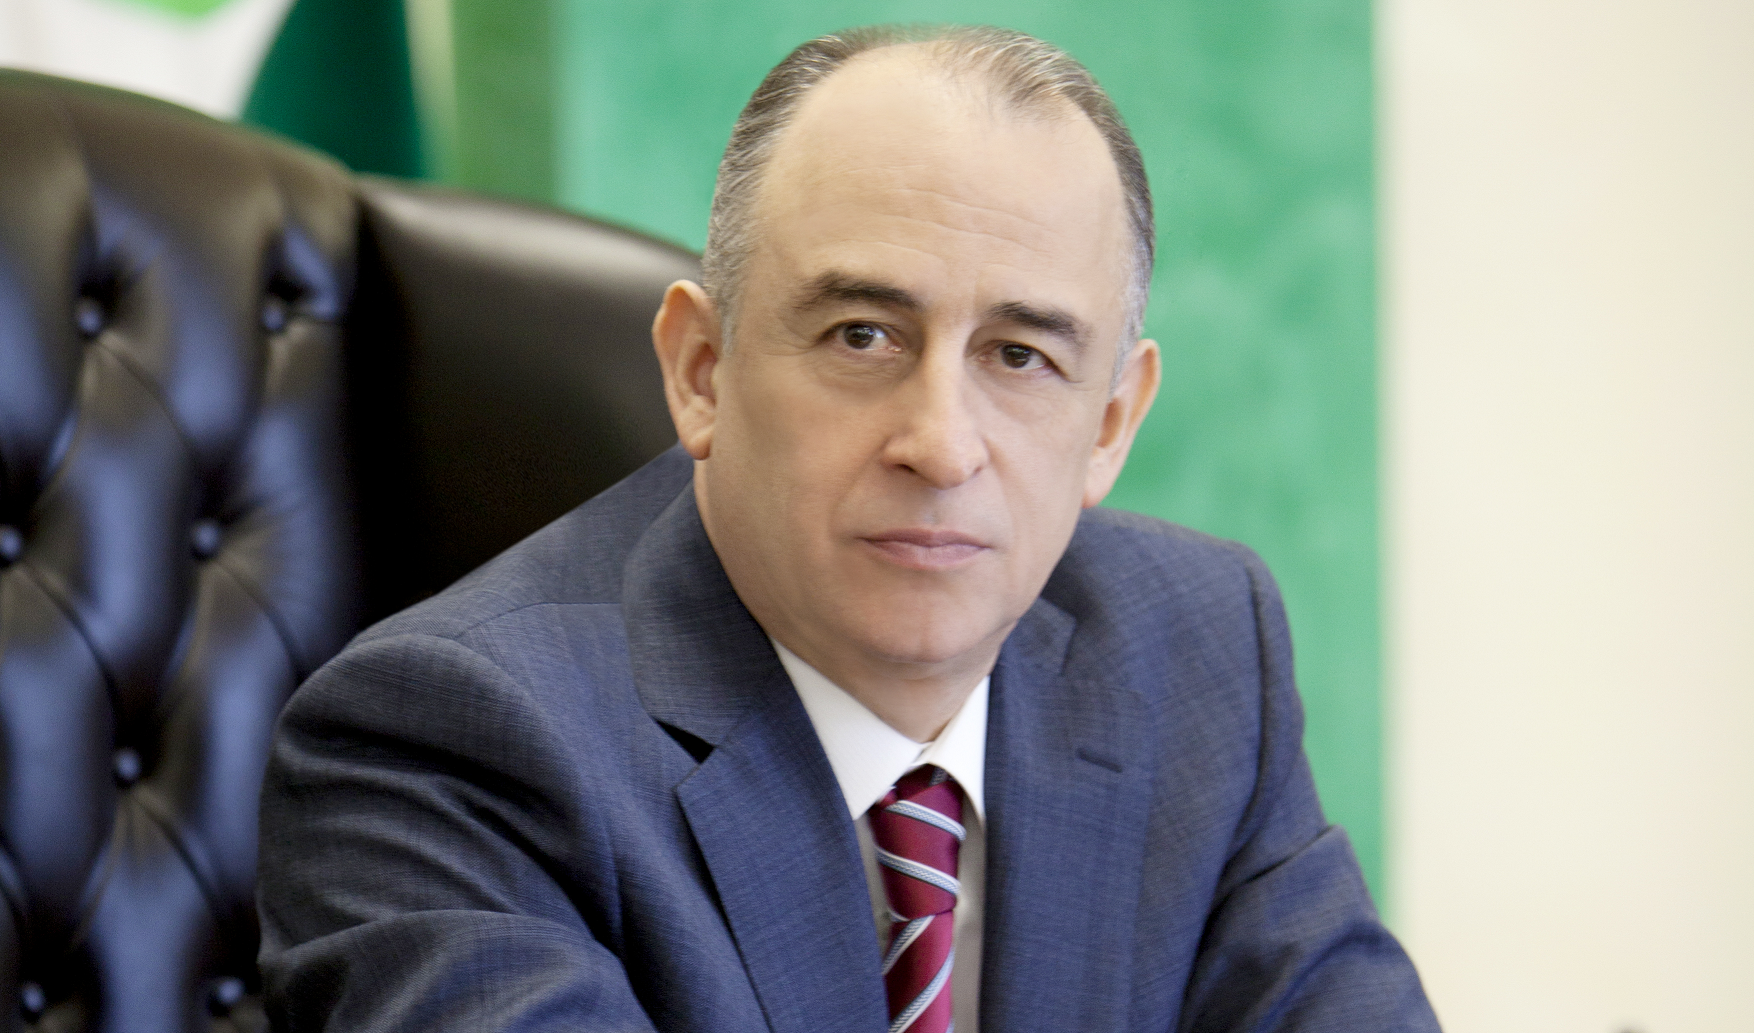 Юрий Коков в составе Совета при Президенте Российской Федерации по развитию местного самоуправления